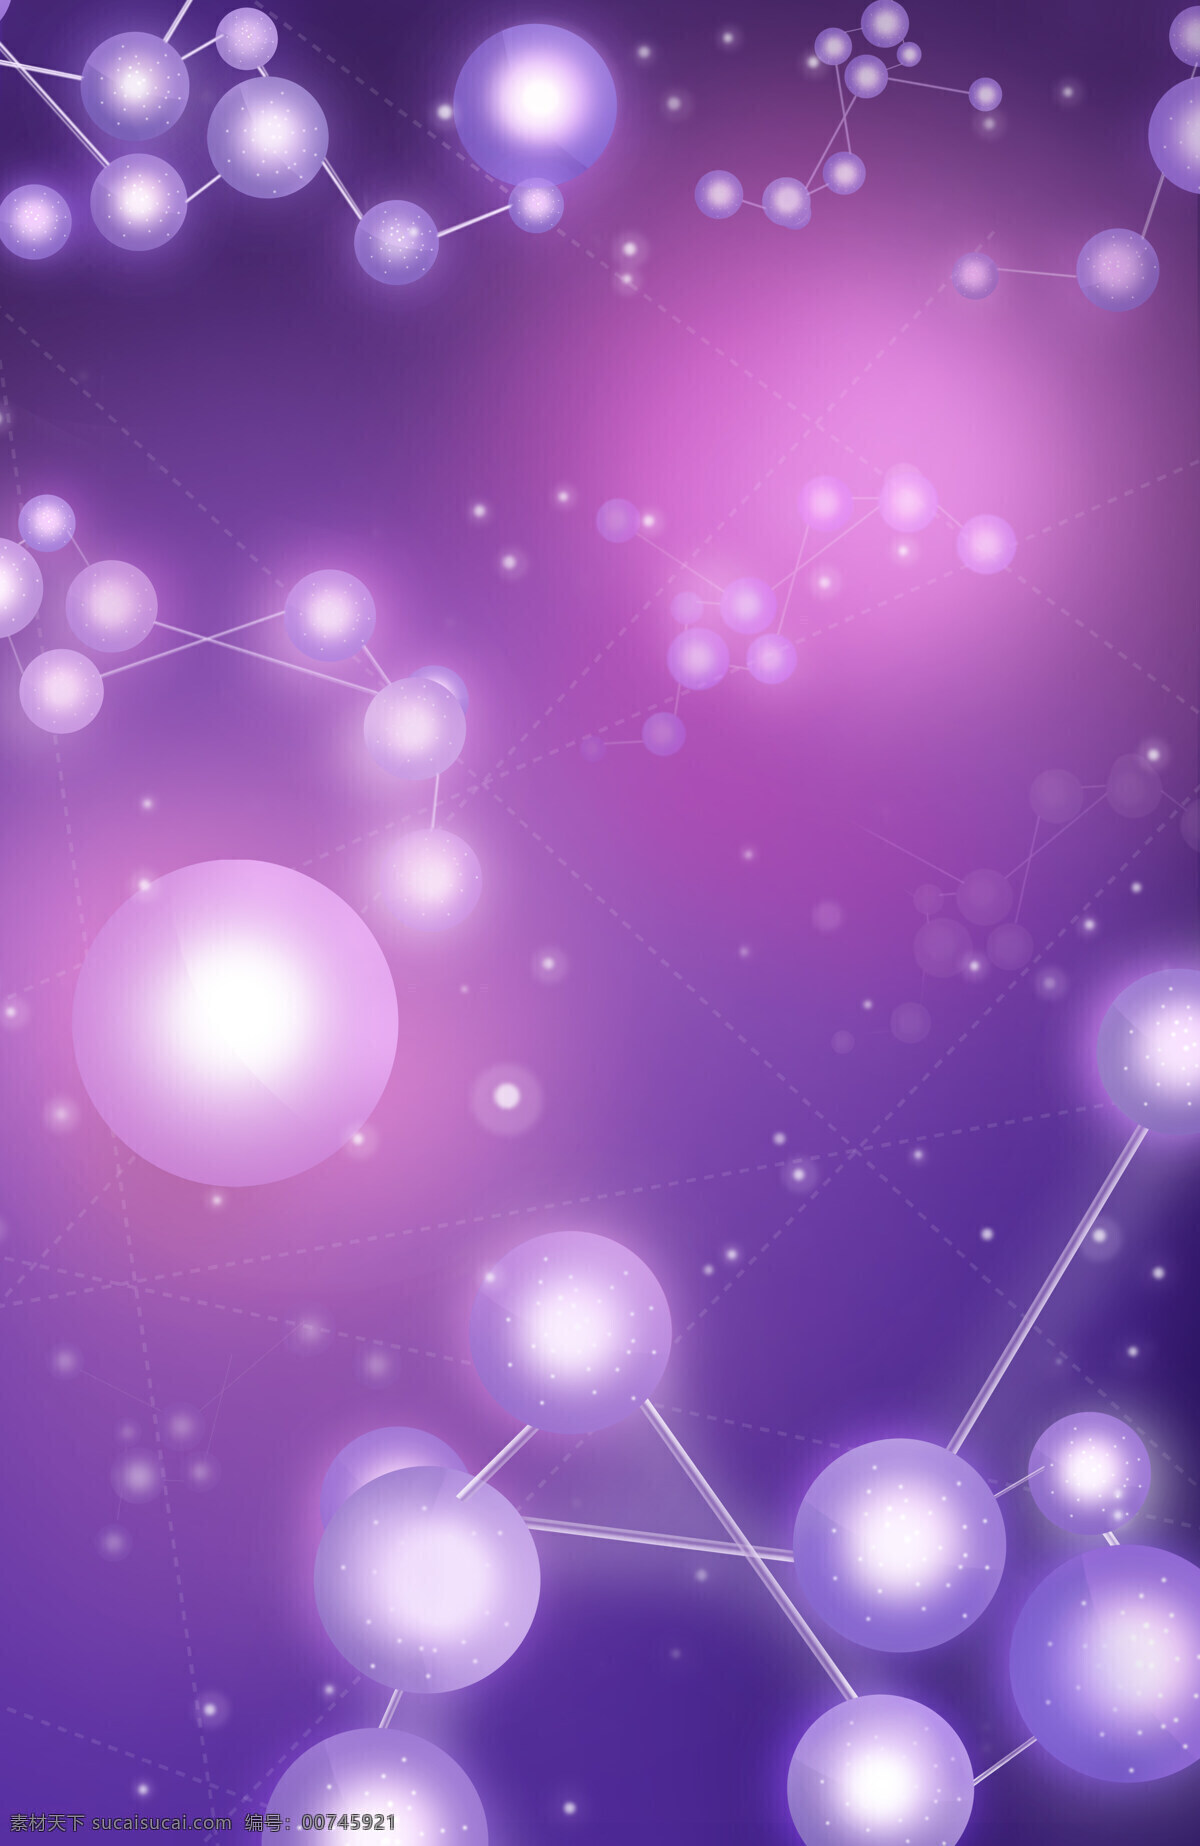 白色 珍珠 立体 链接 紫色 手机 背景 白色珍珠 背景图片 光斑 画布 紫色背景 珍珠颗粒 桌面背景 ipad背景 唯美